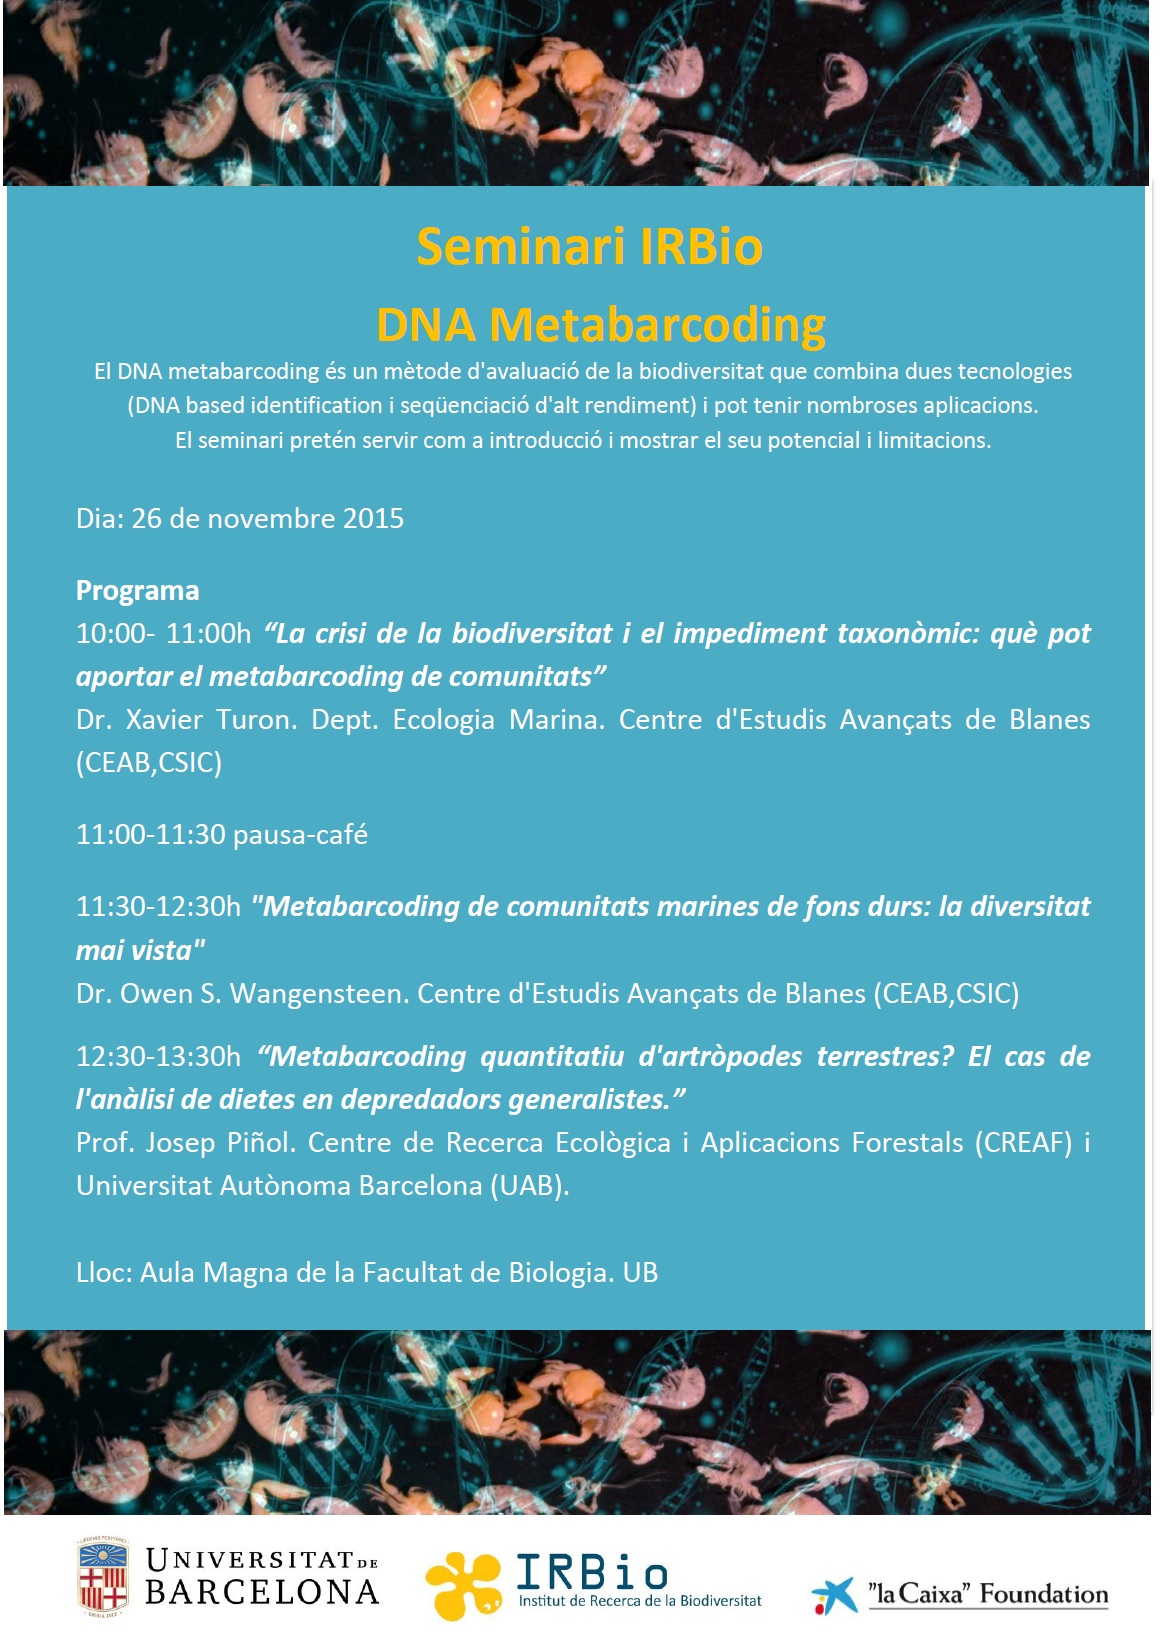 Seminari IRBio: DNA Metabarcoding